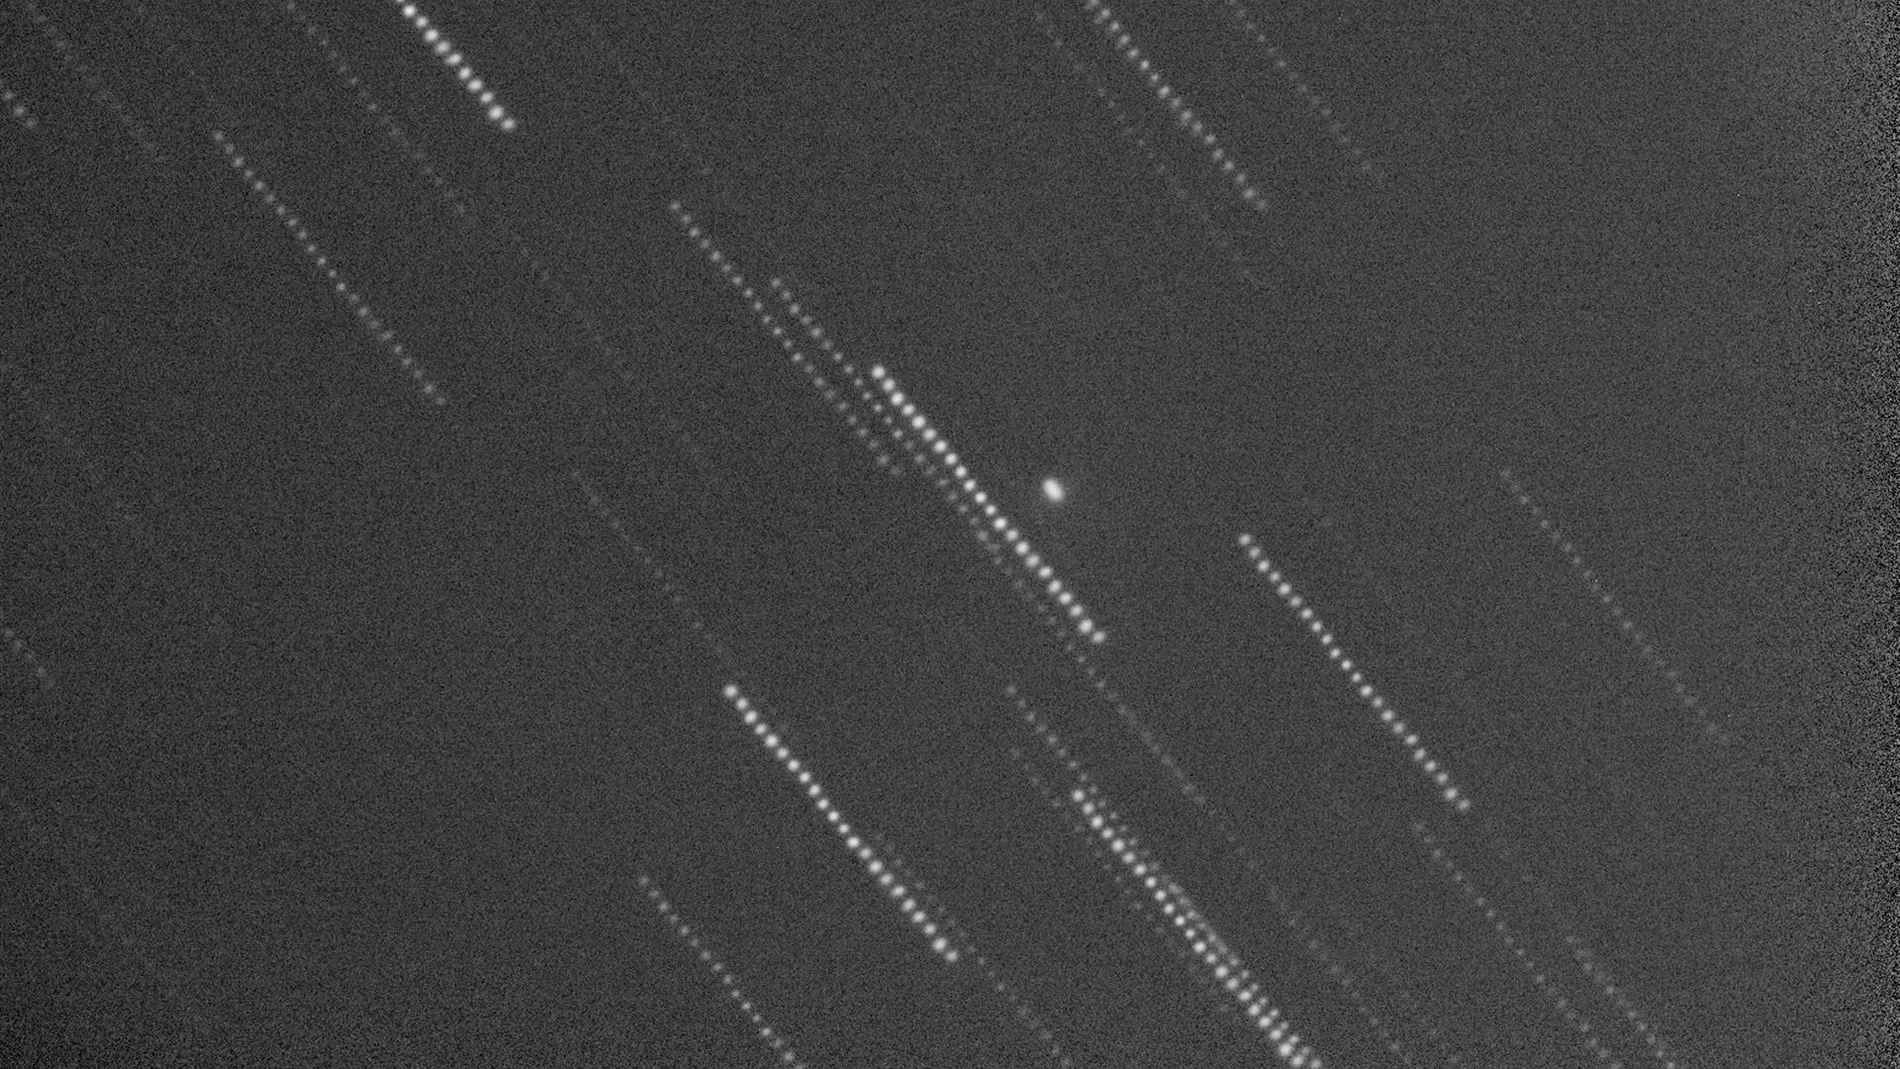 Observan primeros indicios de que el asteroide contra el que impactó la nave DART se ha desviado